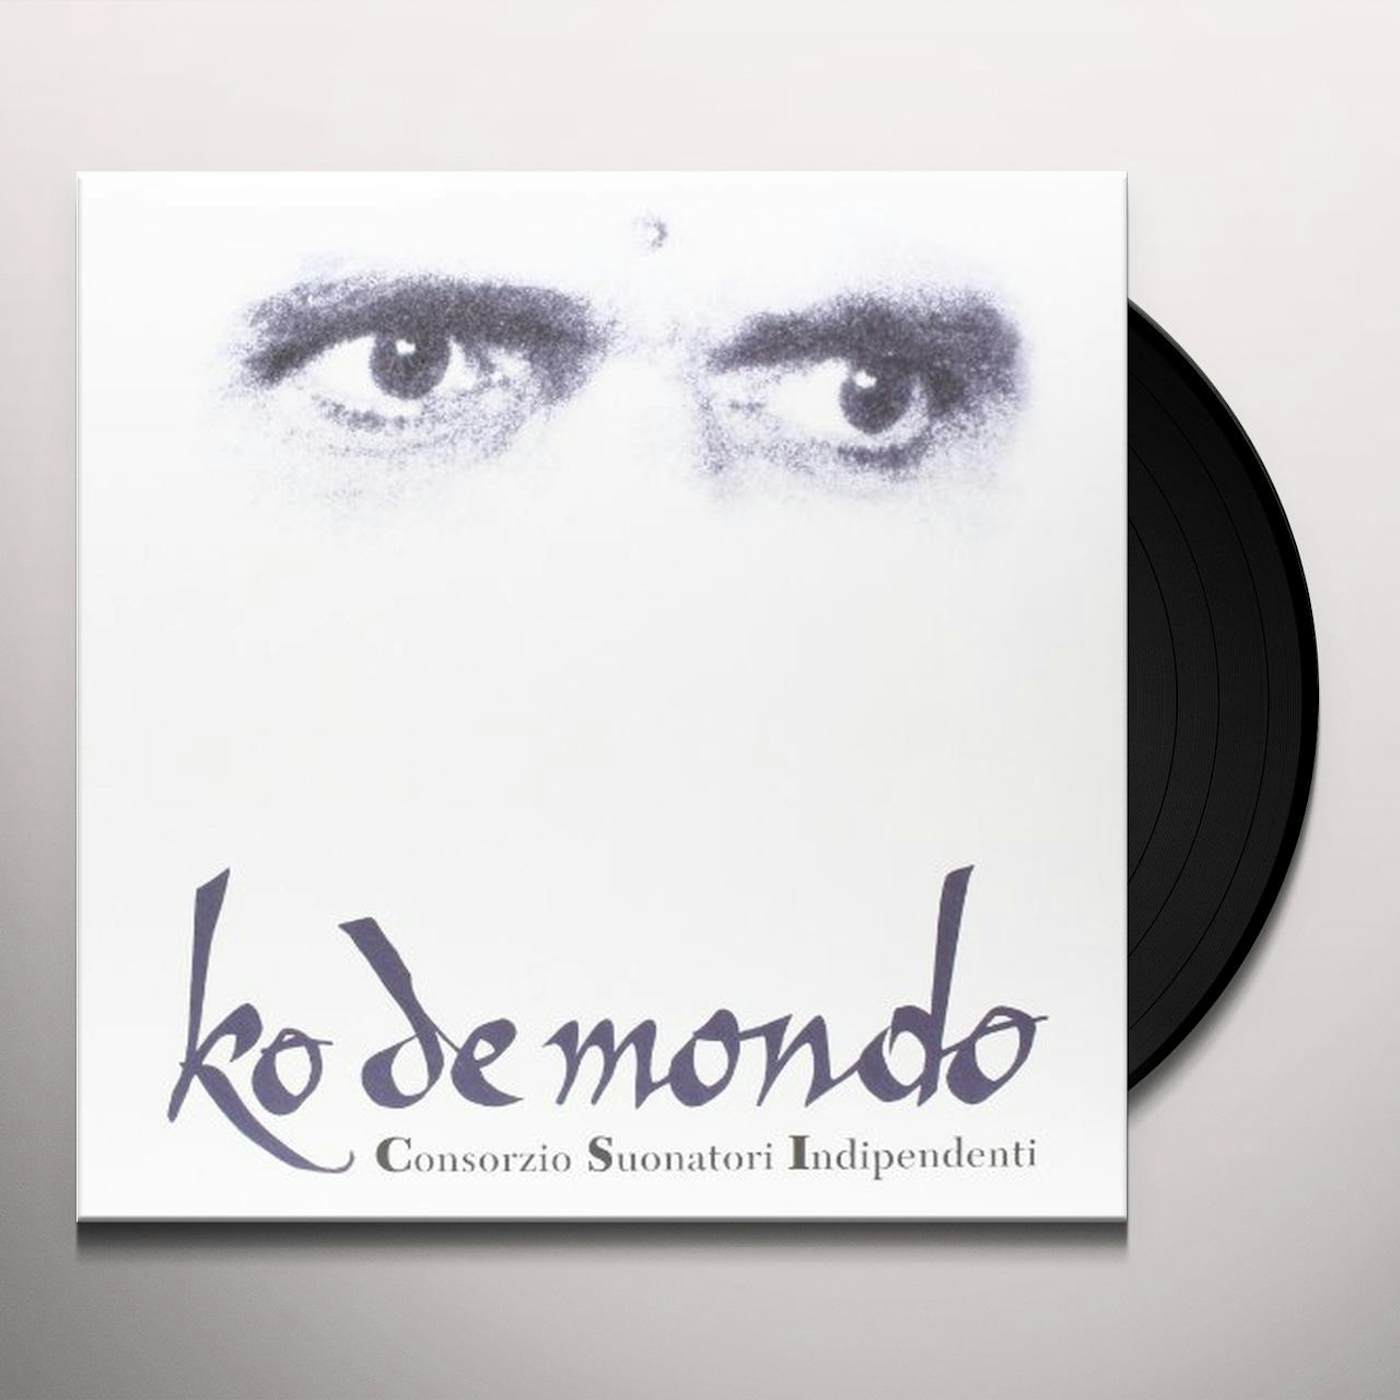 C.S.I. KO DE MONDO Vinyl Record - Italy Release